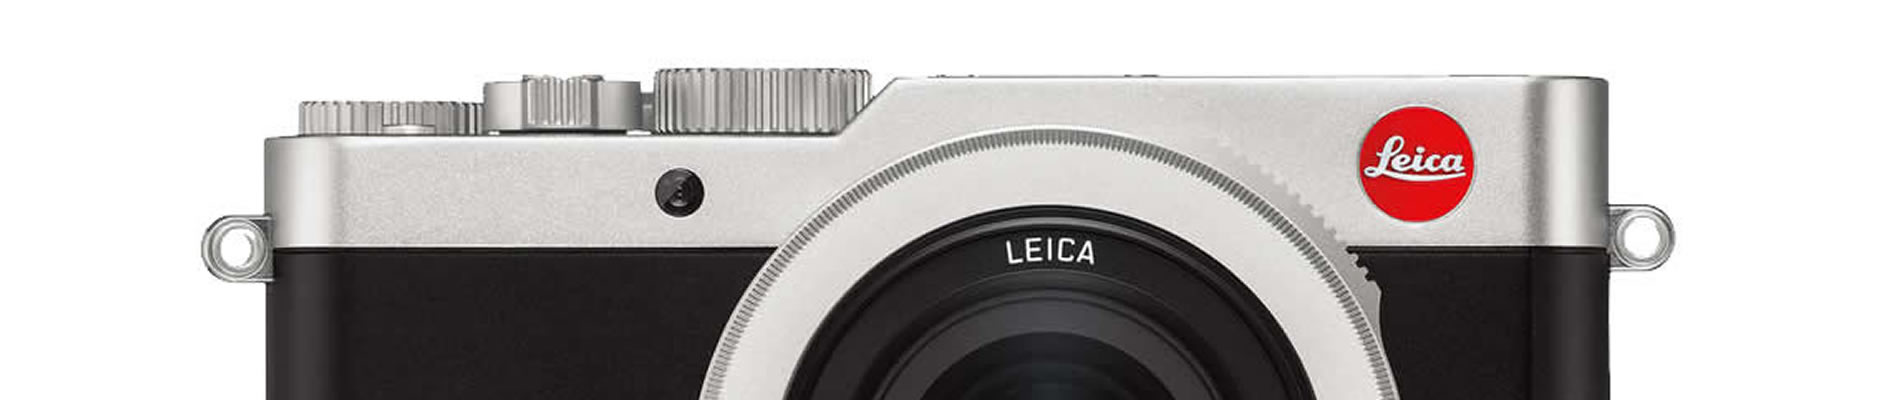 Leica H